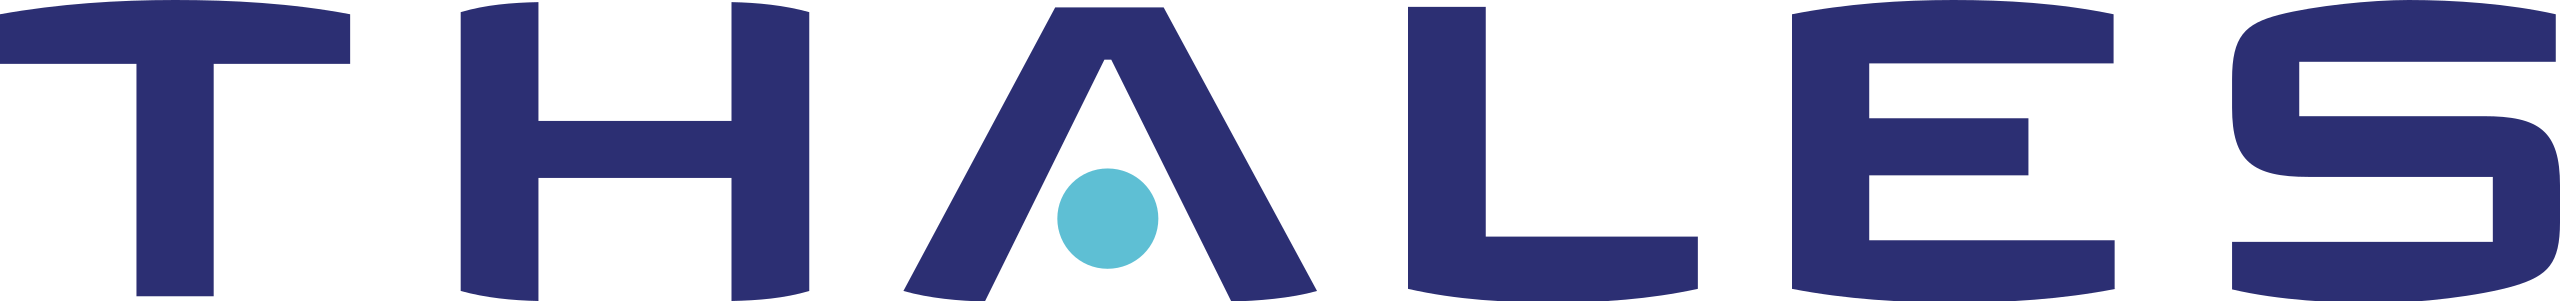 LeanTaas client logo, color